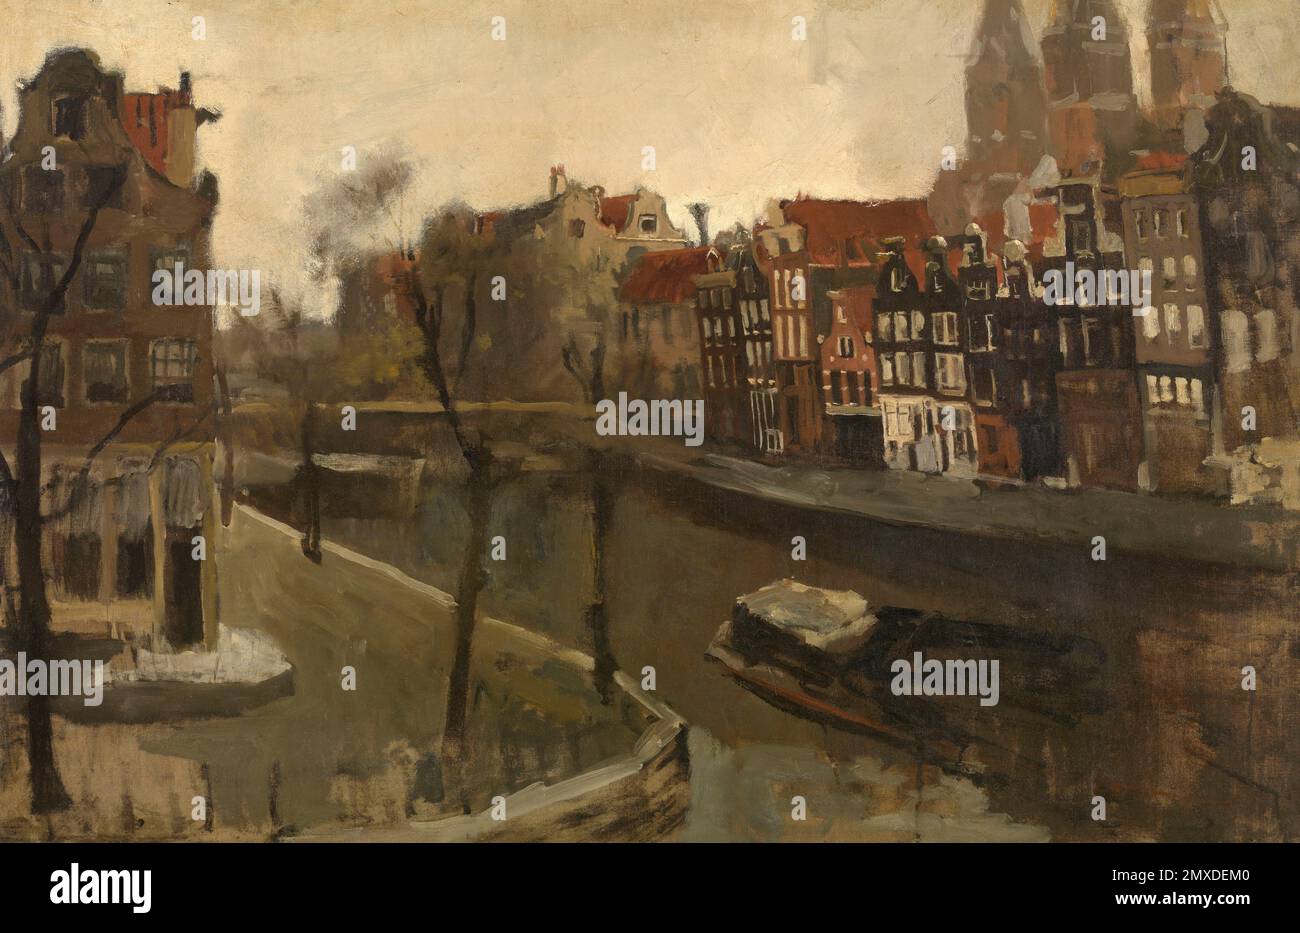 Prinsengracht in Amsterdam. Museum: Royal Museum of Fine Arts, Antwerpen. AUTOR: GEORGE HENDRIK BREITNER. Stockfoto